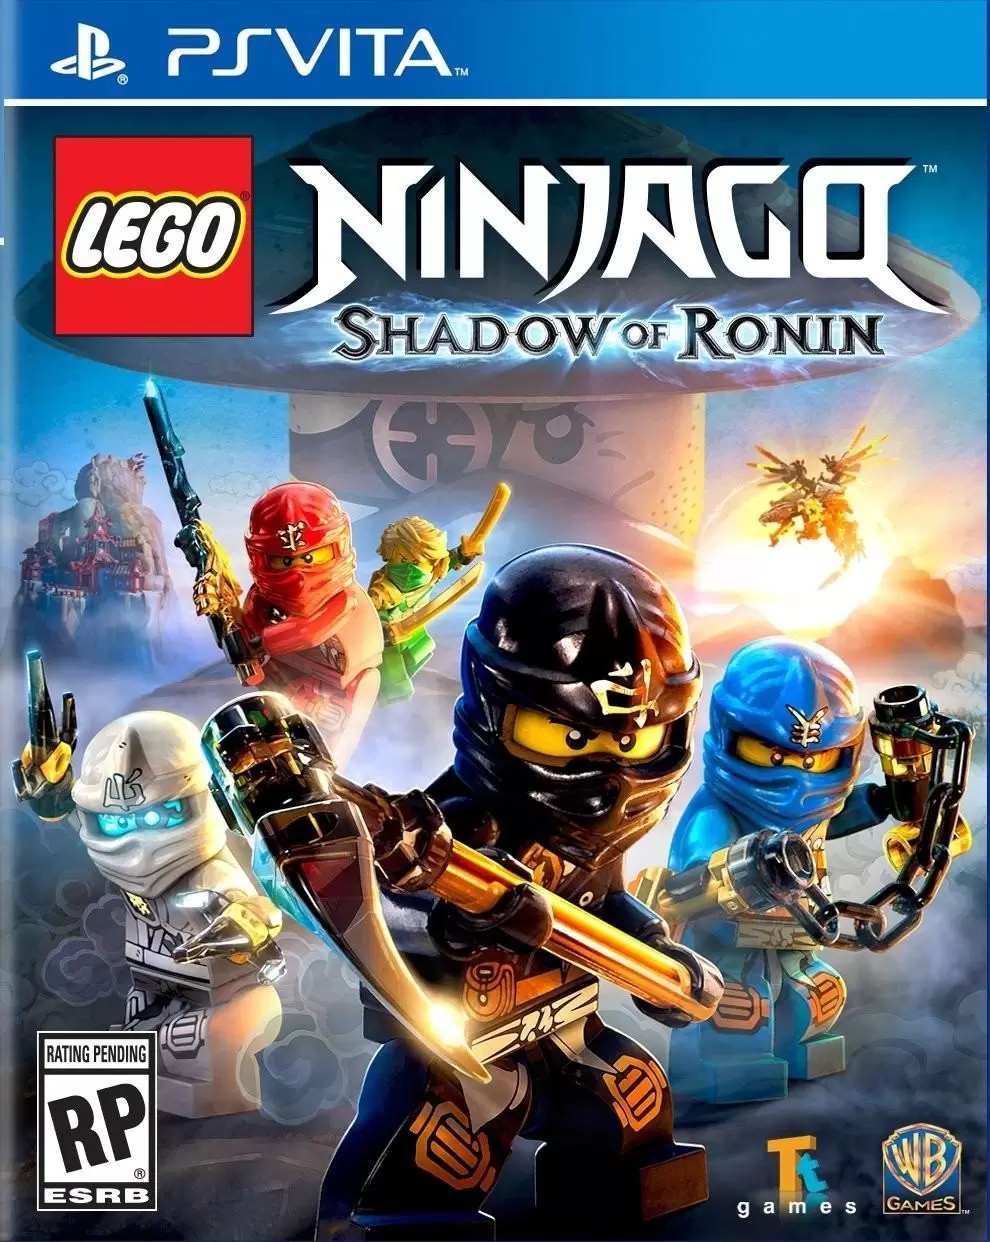 PS Vita Games - LEGO Ninjago: Shadow of Ronin